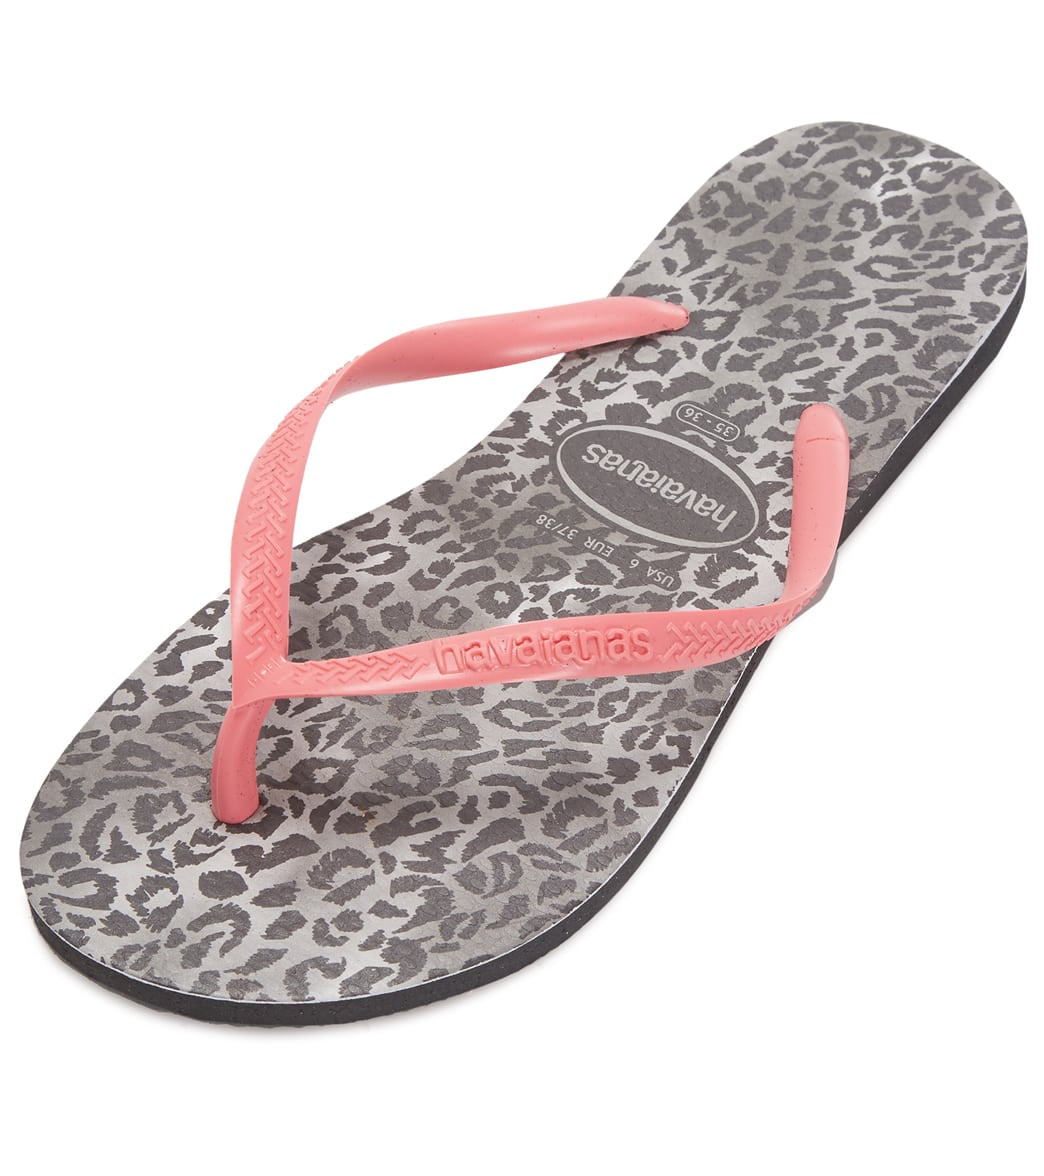 Havaianas Slim Leopard Sandals - Black 35/36 - Swimoutlet.com